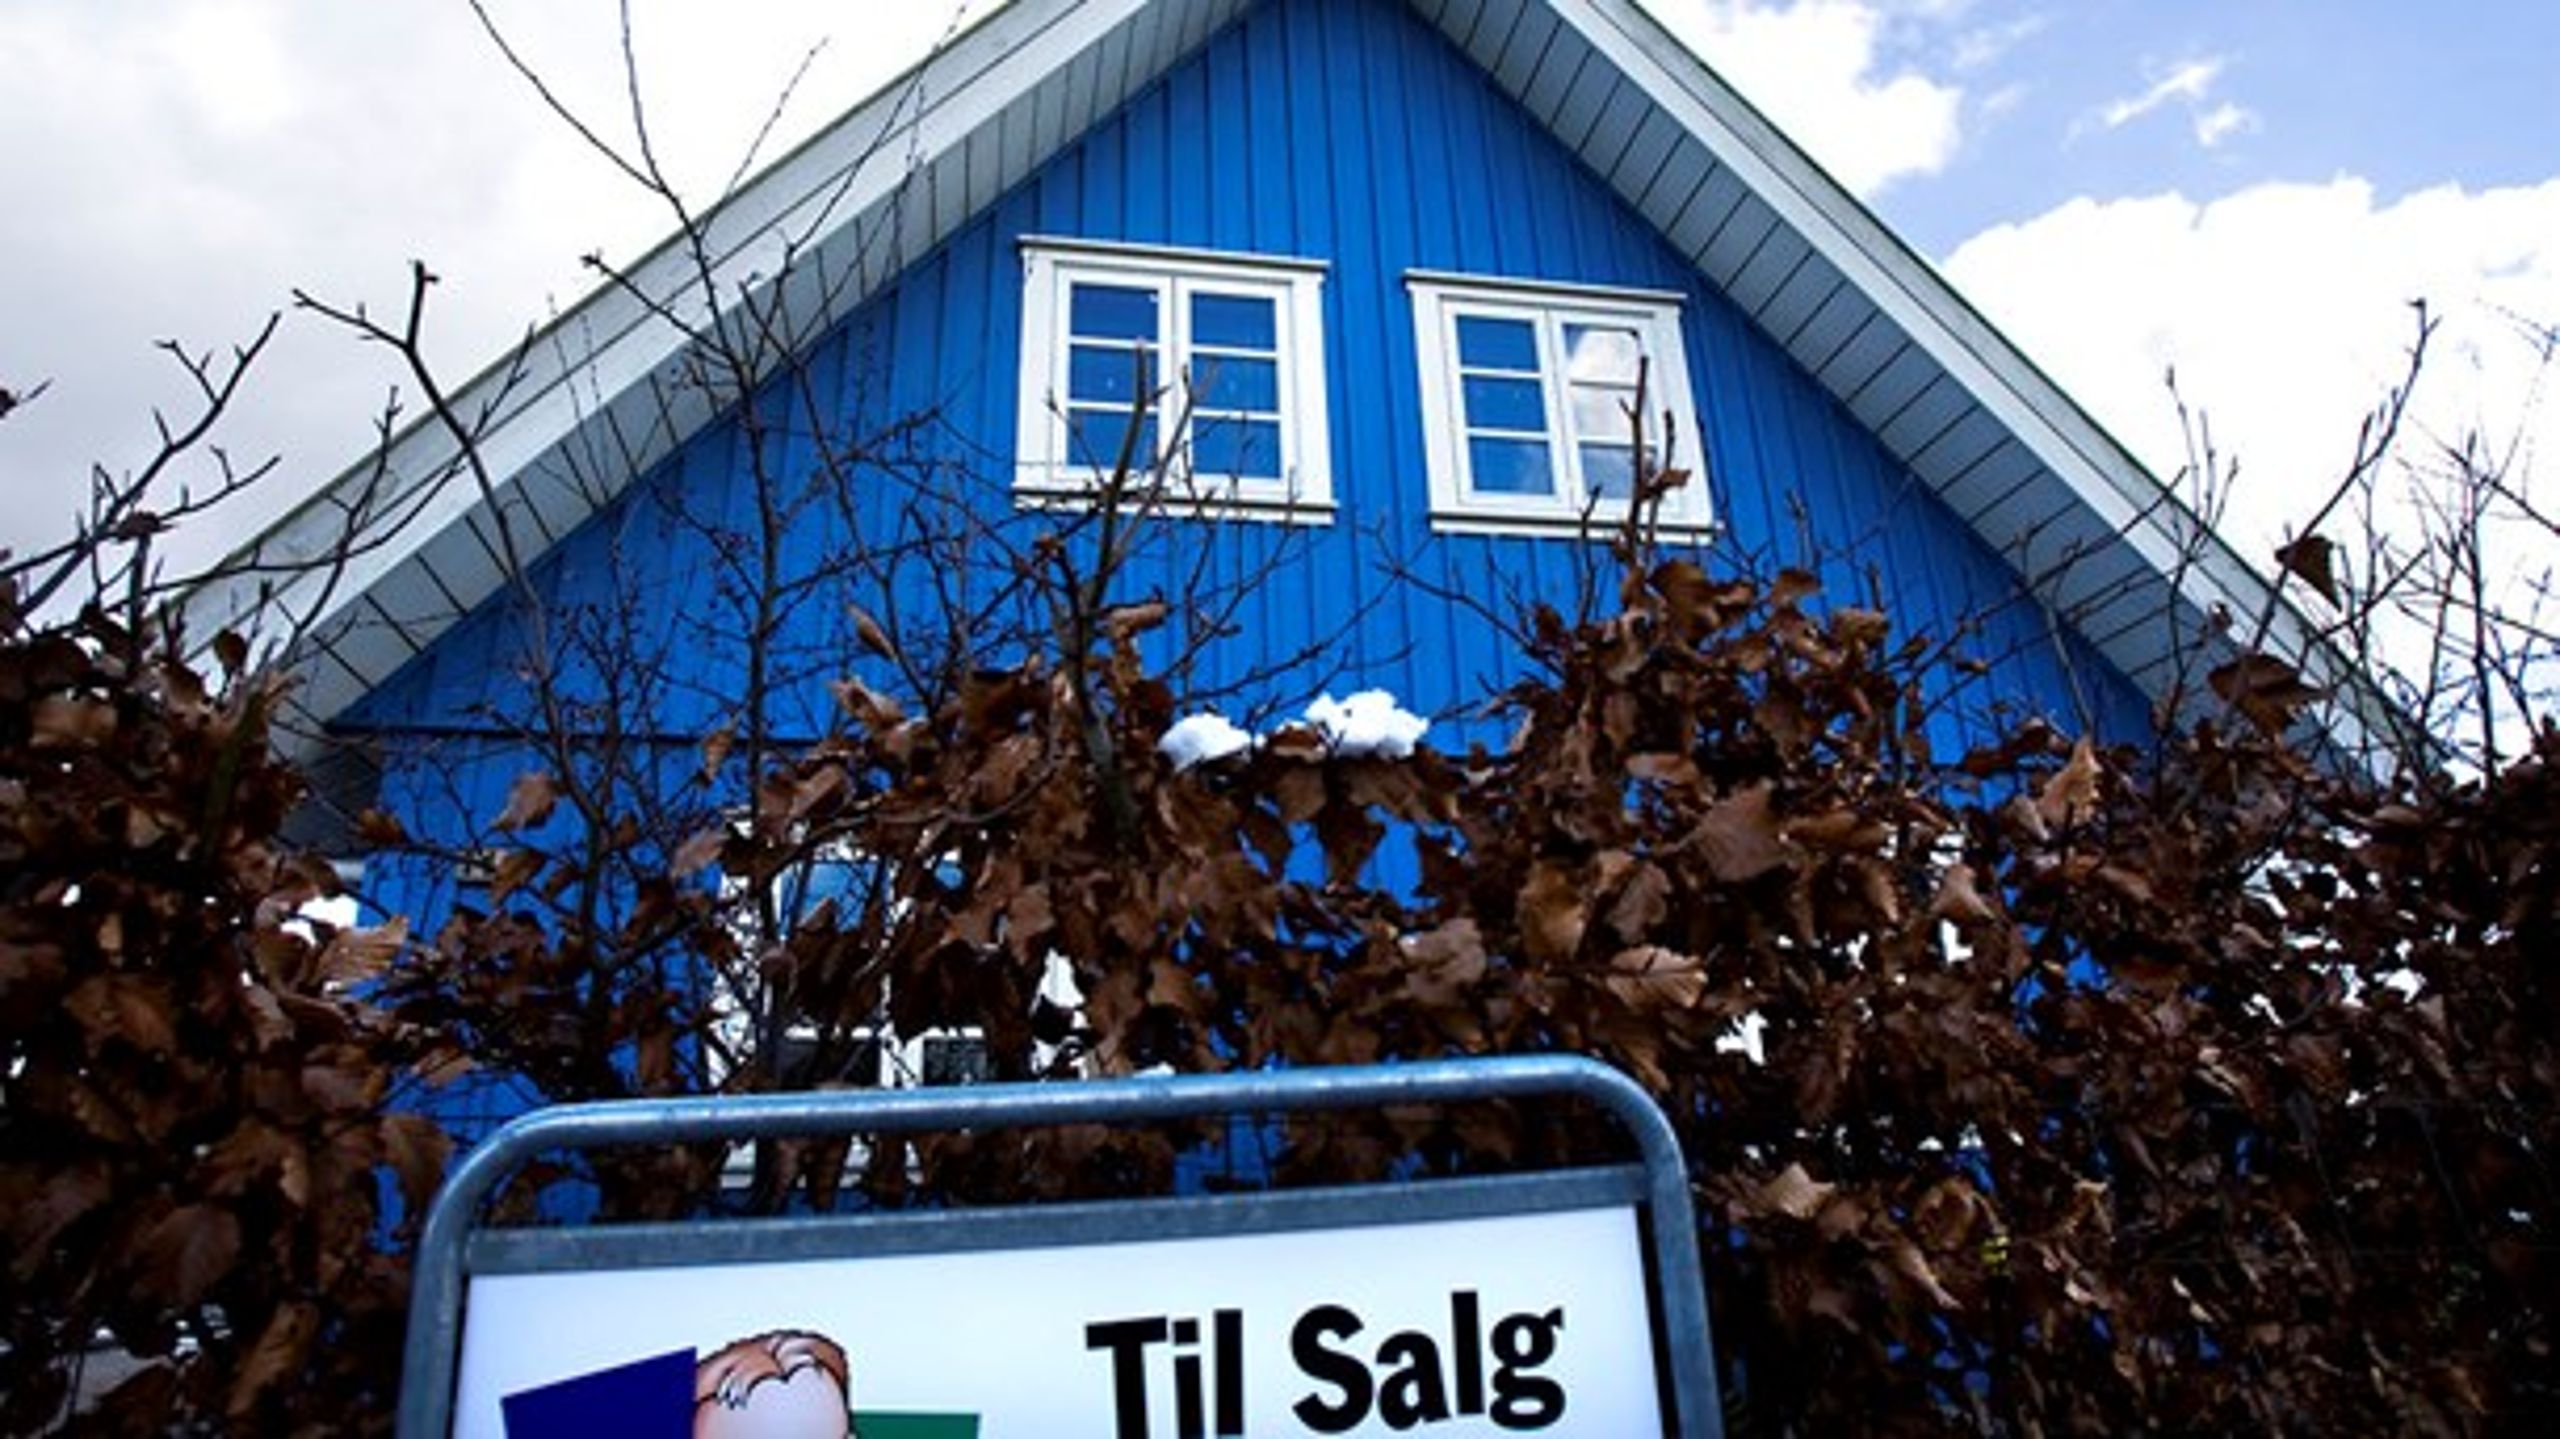 UDLIGNING: Hvis udligningssystemet skal tage hensyn til forskelle i huspriser, vil systemet male sig op i et hjørne, mener Niels Jørgen Mau Pedersen, VIVE.<br>